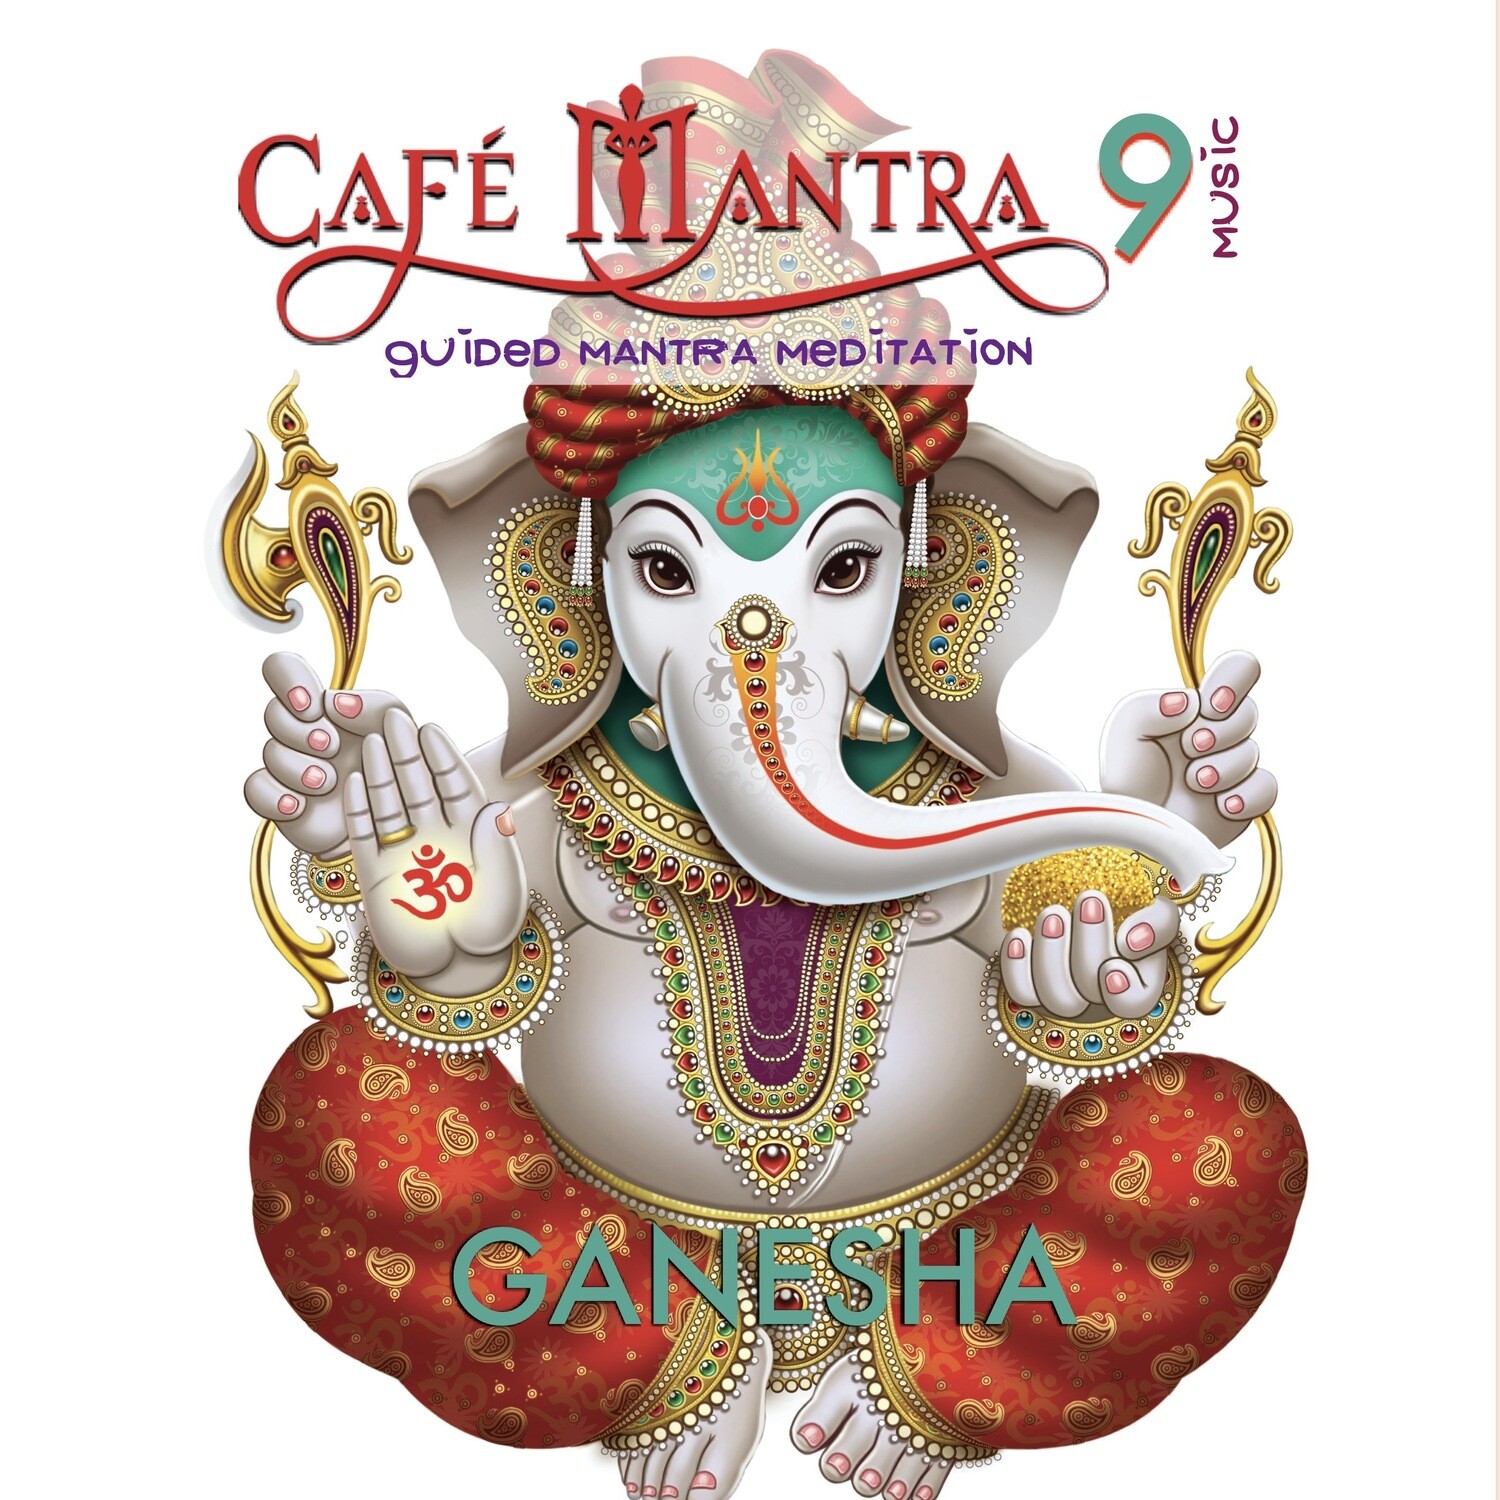 DOWNLOAD: Cafe Mantra Music 9 Ganesha